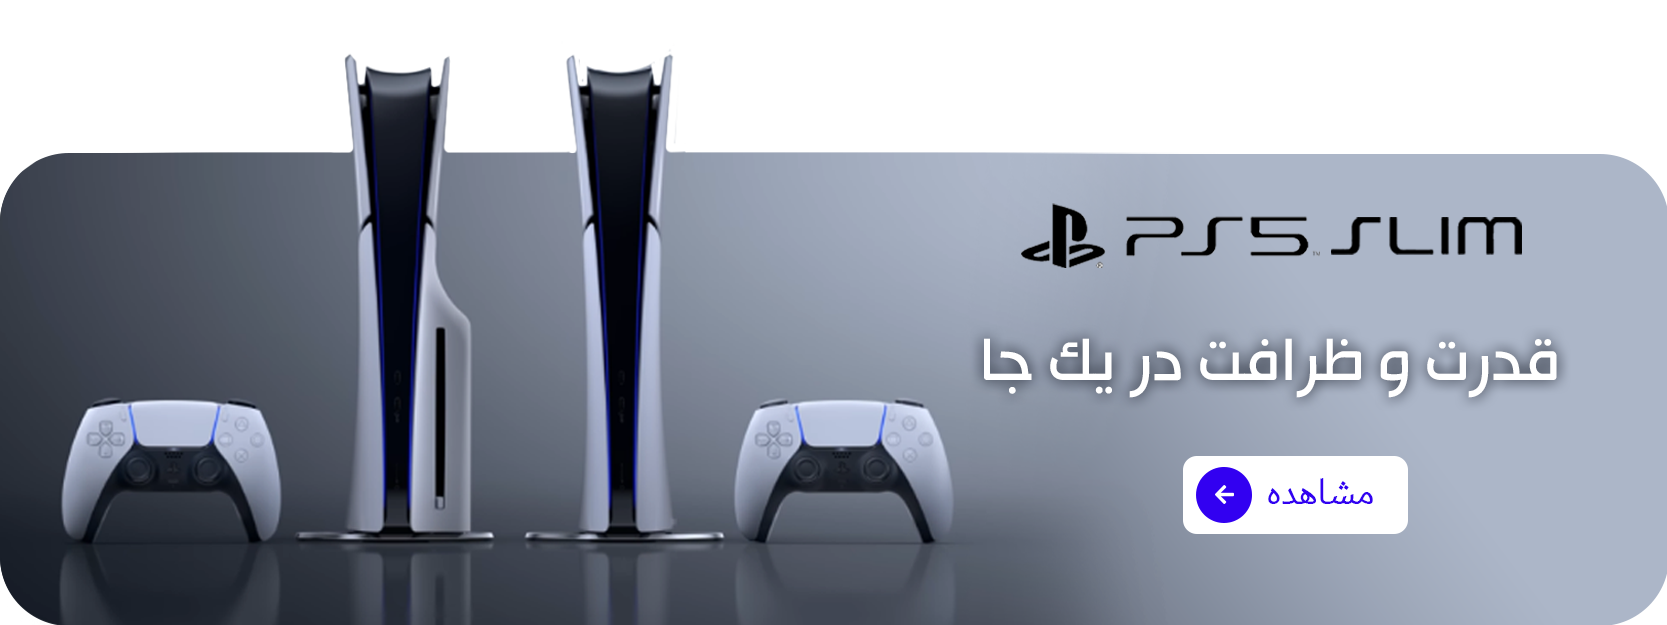 PlayStation slim